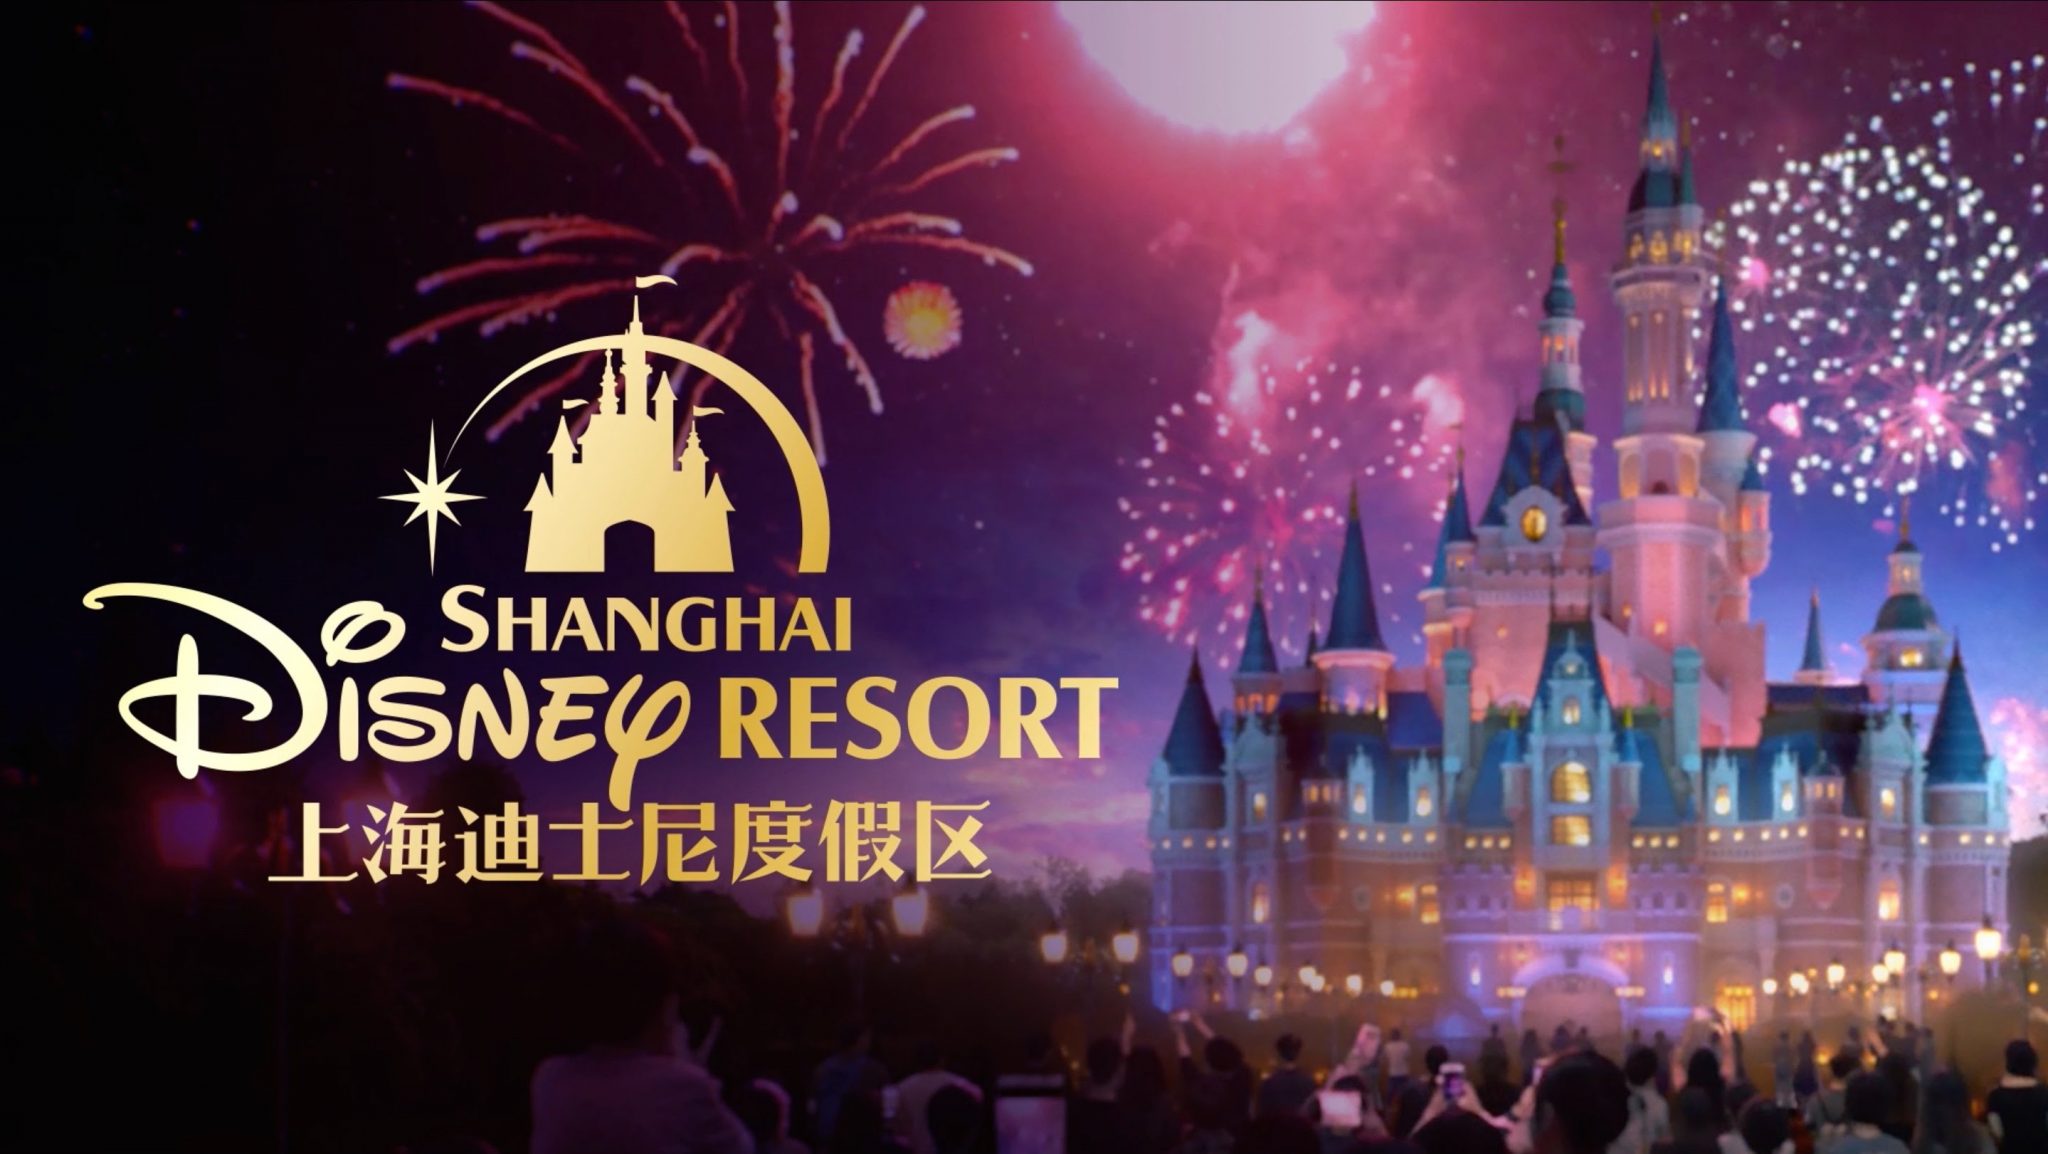 Watch the Shanghai Disney Resort Grand Opening Gala Here!